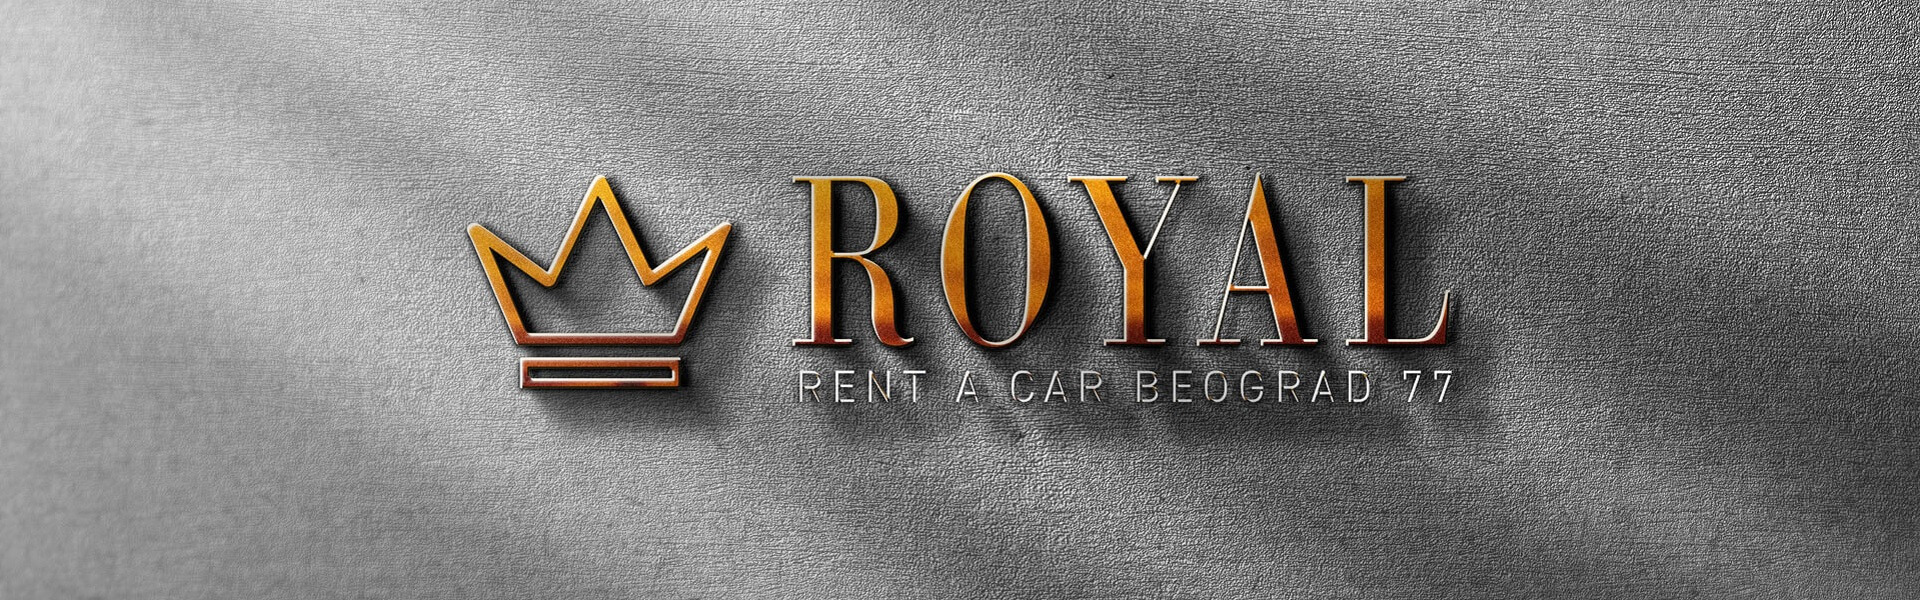 Rent a car Delta | Rent a car Beograd Royal